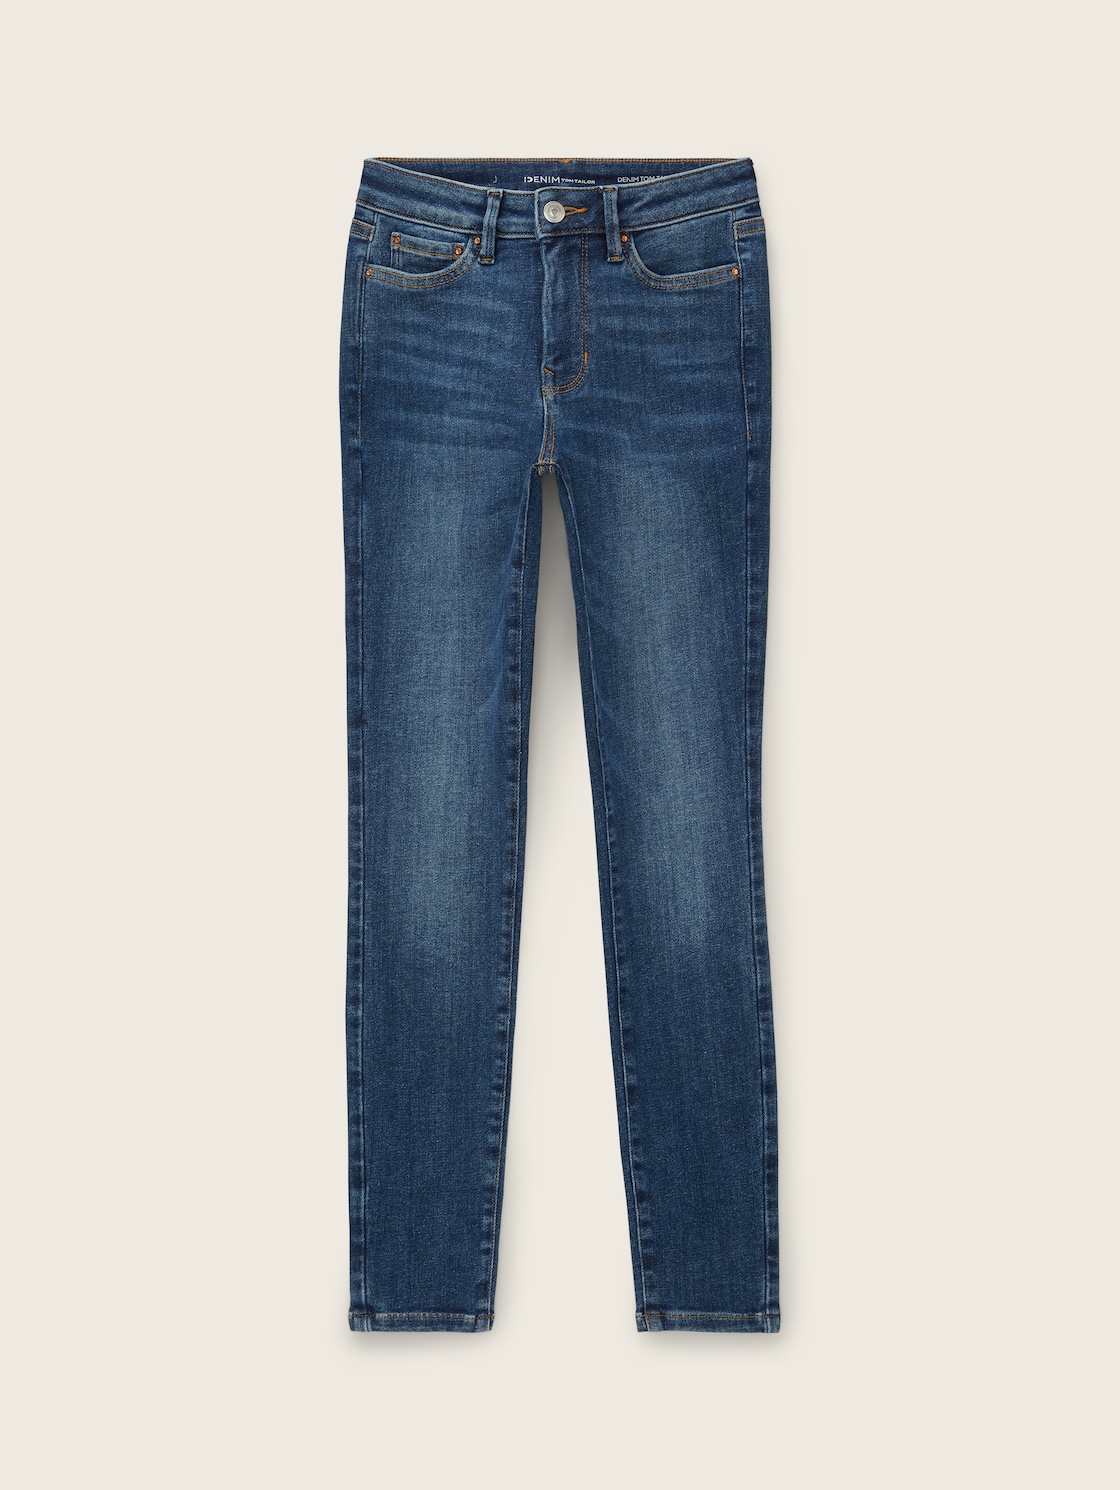 TOM TAILOR DENIM Damen 3 Sizes in 1 - Nela Extra Skinny Jeans, blau, Uni, Gr. S/34 von Tom Tailor Denim